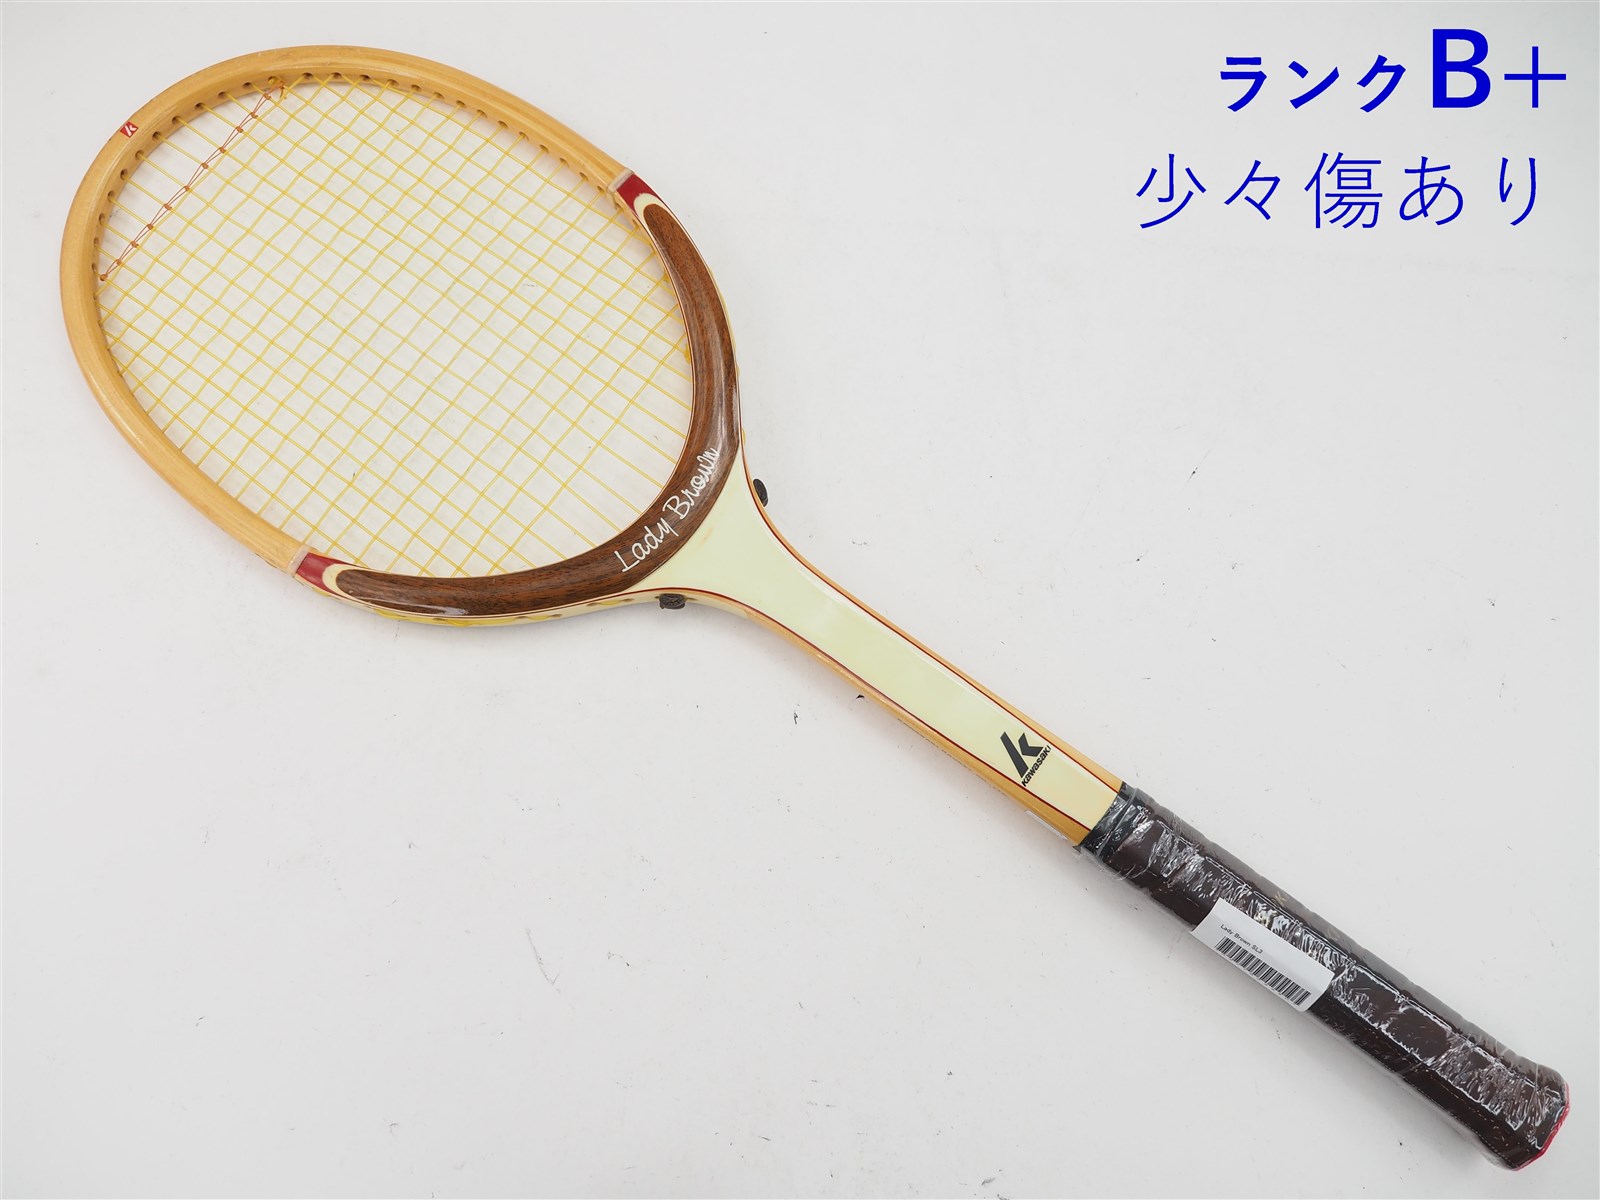 中古 カワサキ レディー ブラウンkawasaki Lady Brown Sl3 中古 テニスラケット 送料無料 の通販 販売 カワサキ テニス サポートセンターへ